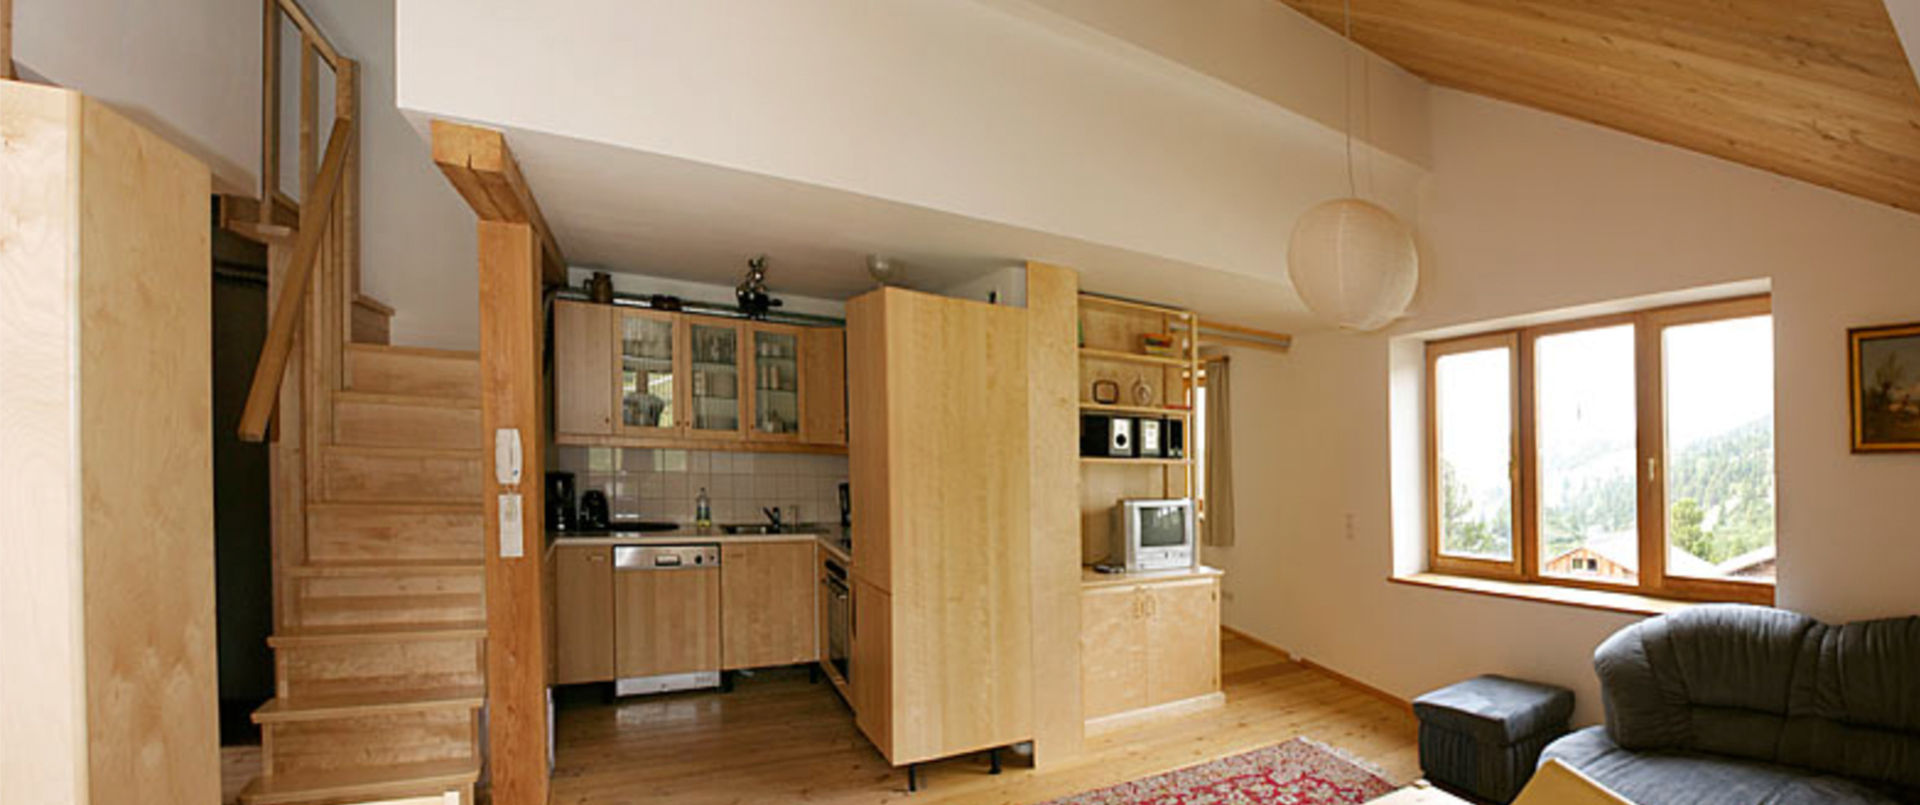 Vakantiehuis Meilinger in Obertauern – woongedeelte en keuken van appartement 2 op de eerste verdieping